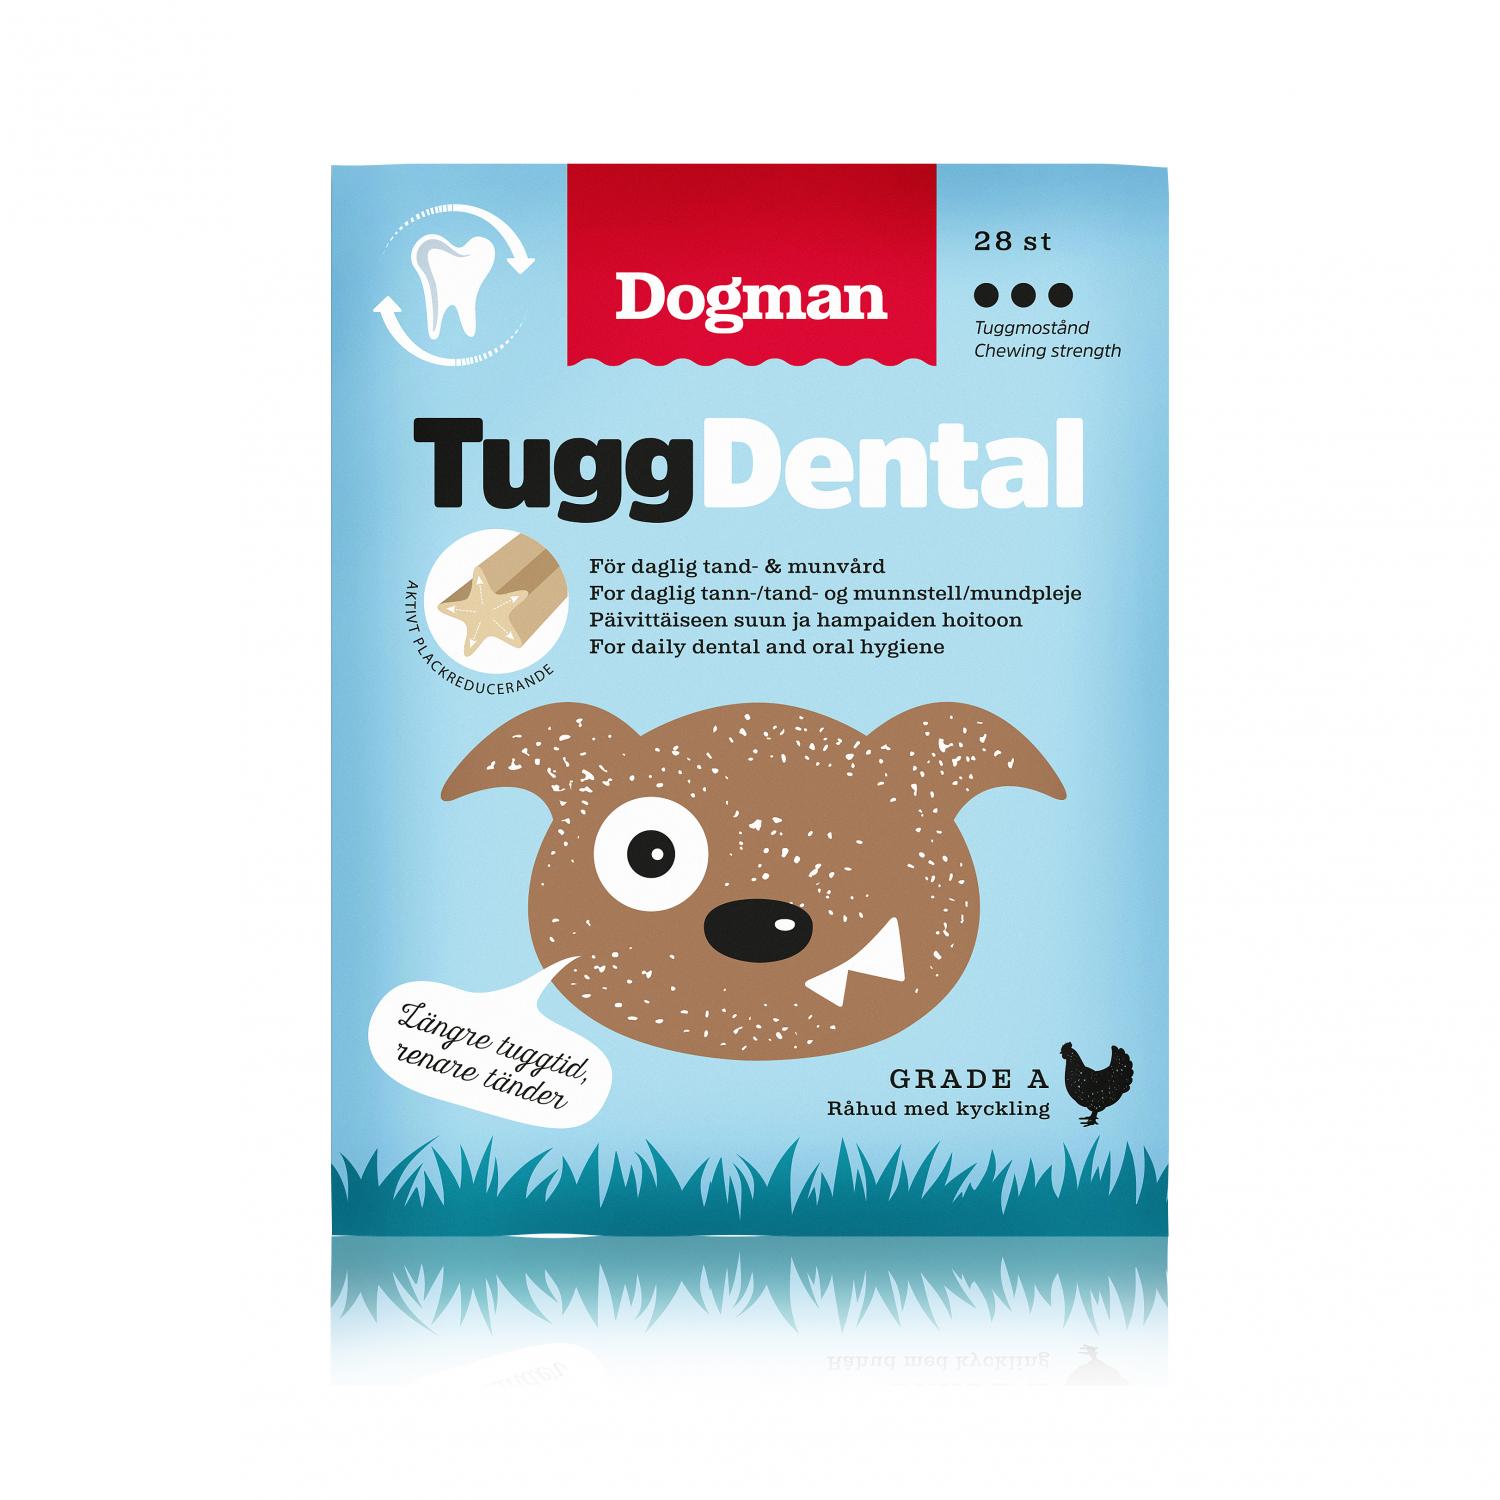 Dogman Tugg Dental med Kyckling